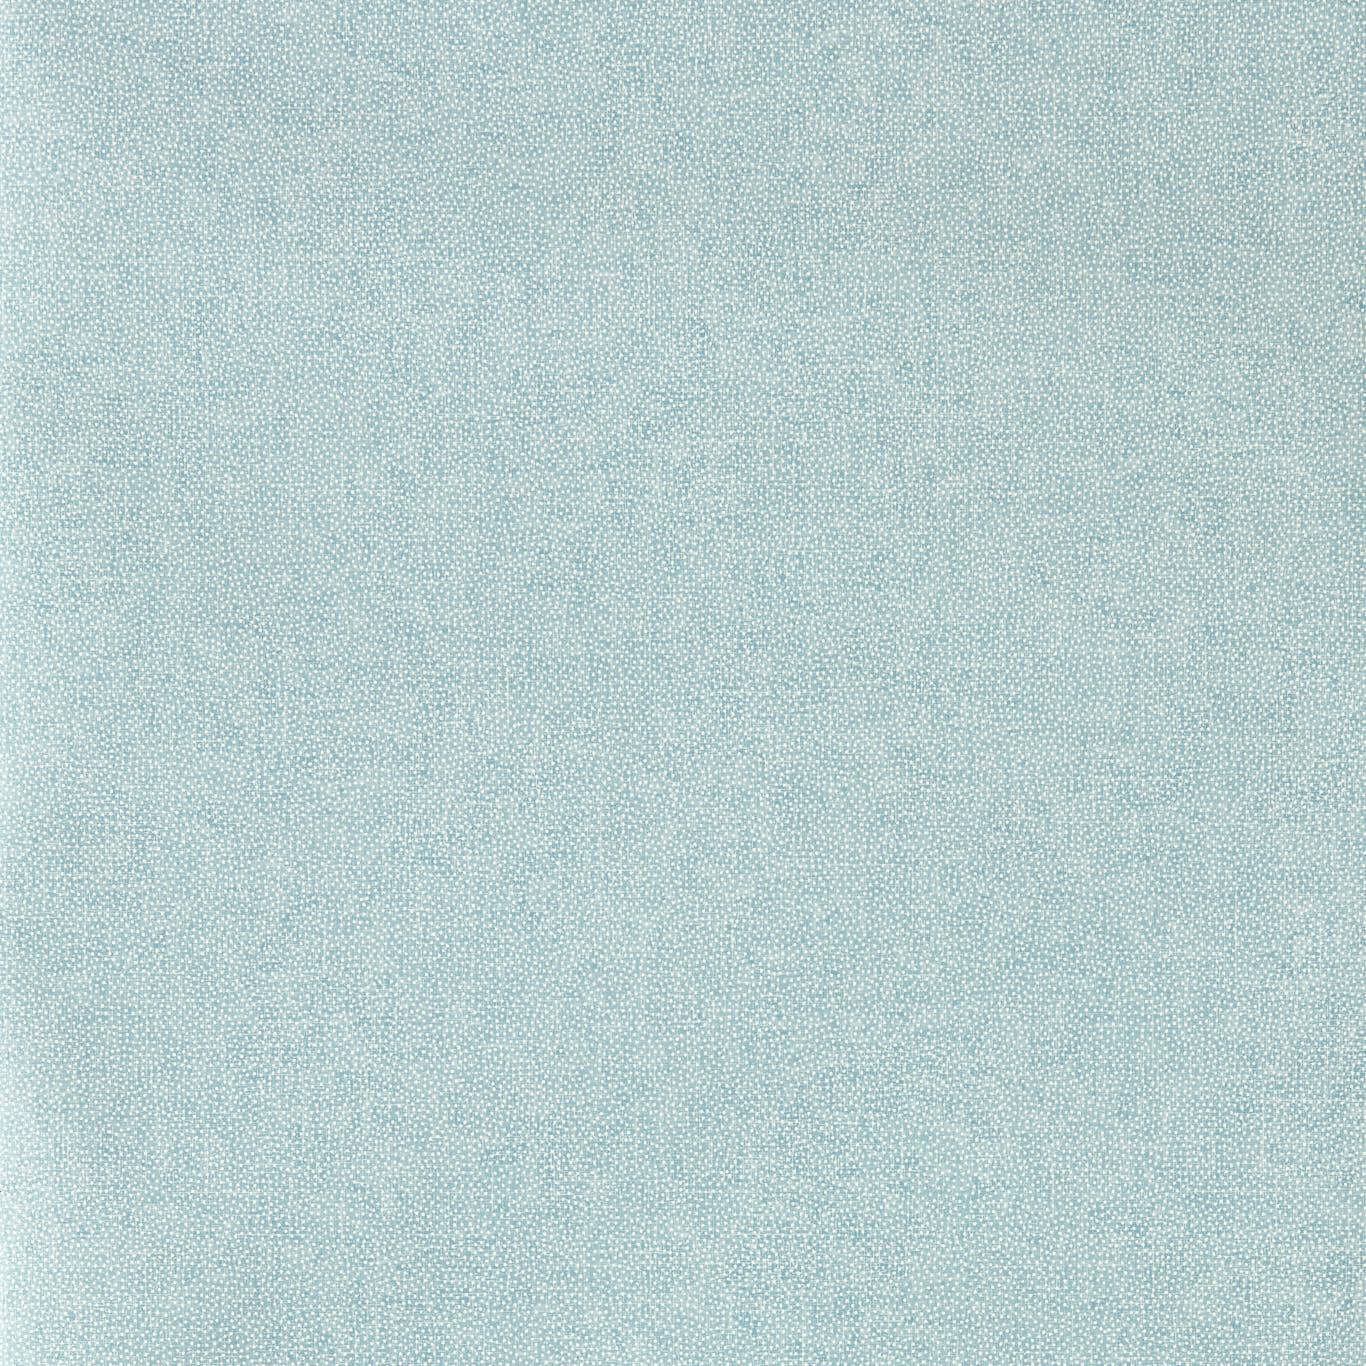 Aboretum Wallpaper Sessile Plain - Crockers Paint & Wallpaper